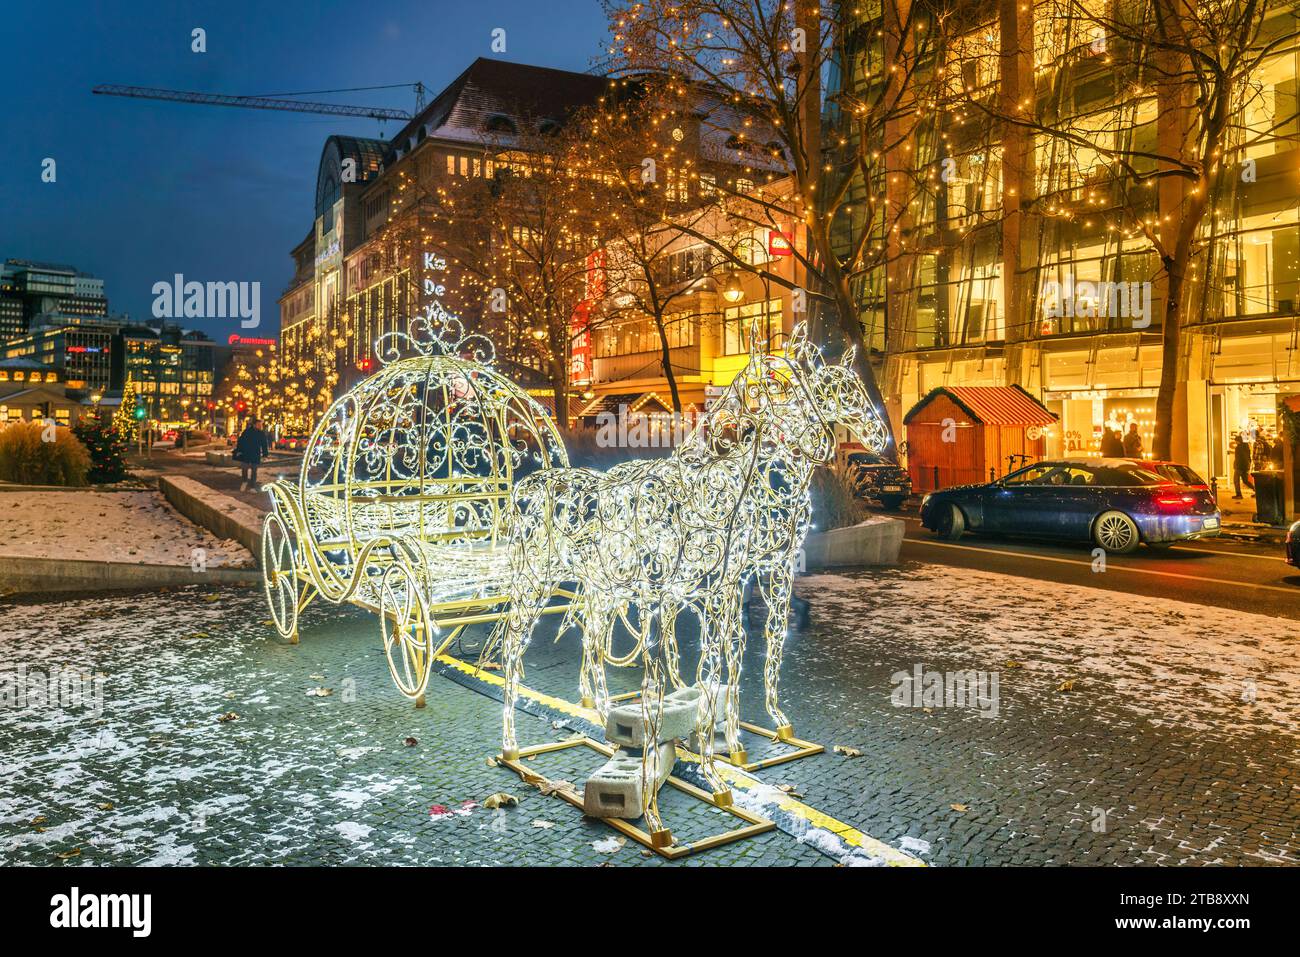 Weihnachtsbeleuchtung Tauentziehen, City West, Berlin Stock Photo